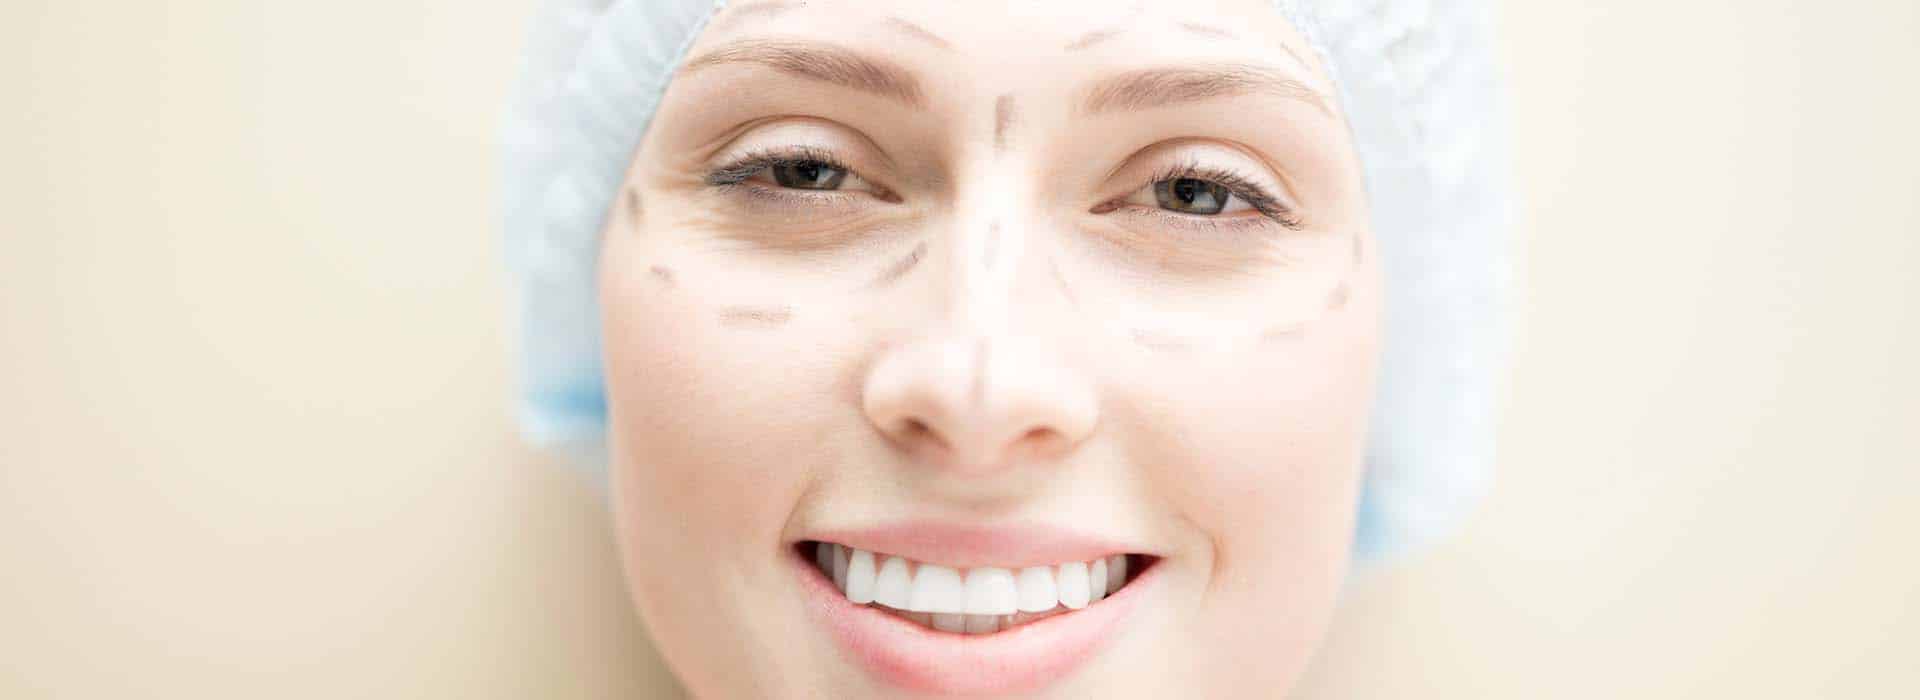 Operación de nariz ancha: Cirugía y postoperatorio